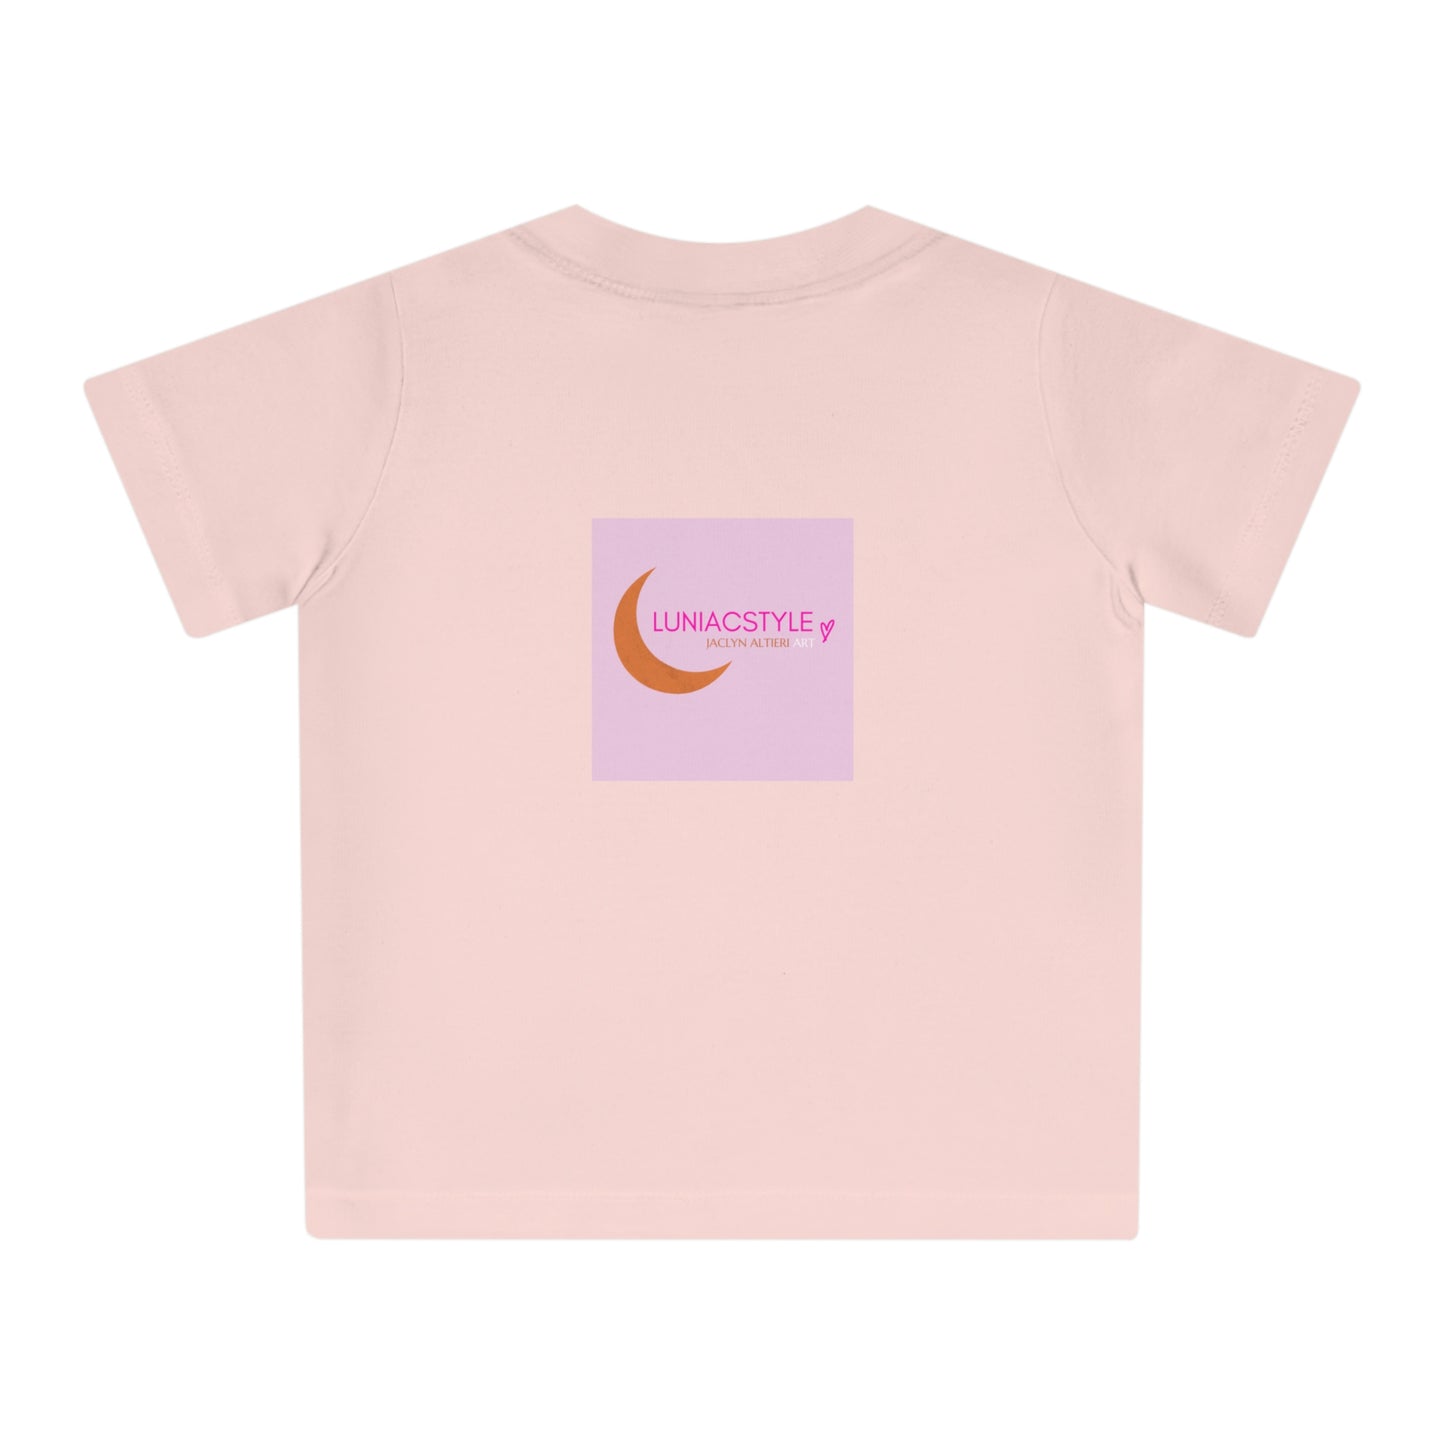 "MOON GIRLS" Girl Talk Art Baby T-Shirt